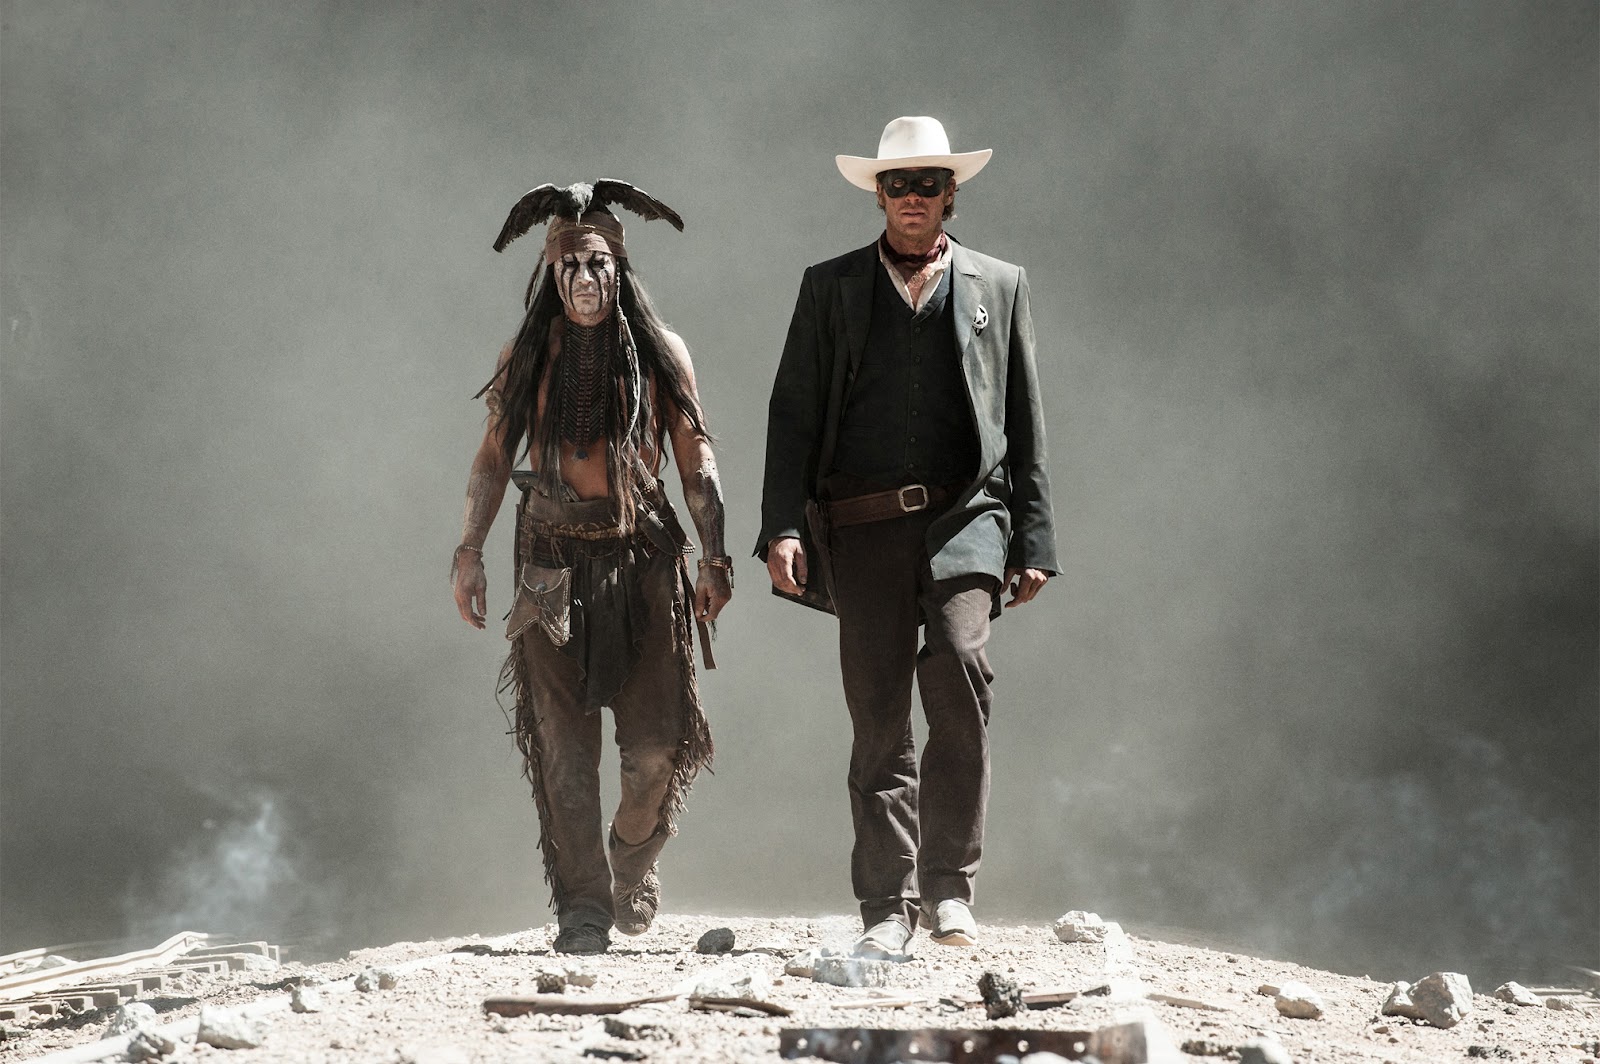 ＣＩＡ☆こちら映画中央情報局です: The Lone Ranger ジョニー・デップが新たなカリスマ・キャラのインディアン、トント に扮したウエスタン・アドベンチャーの超大作「ザ・ローン・レンジャー」が予告編を初公開！！